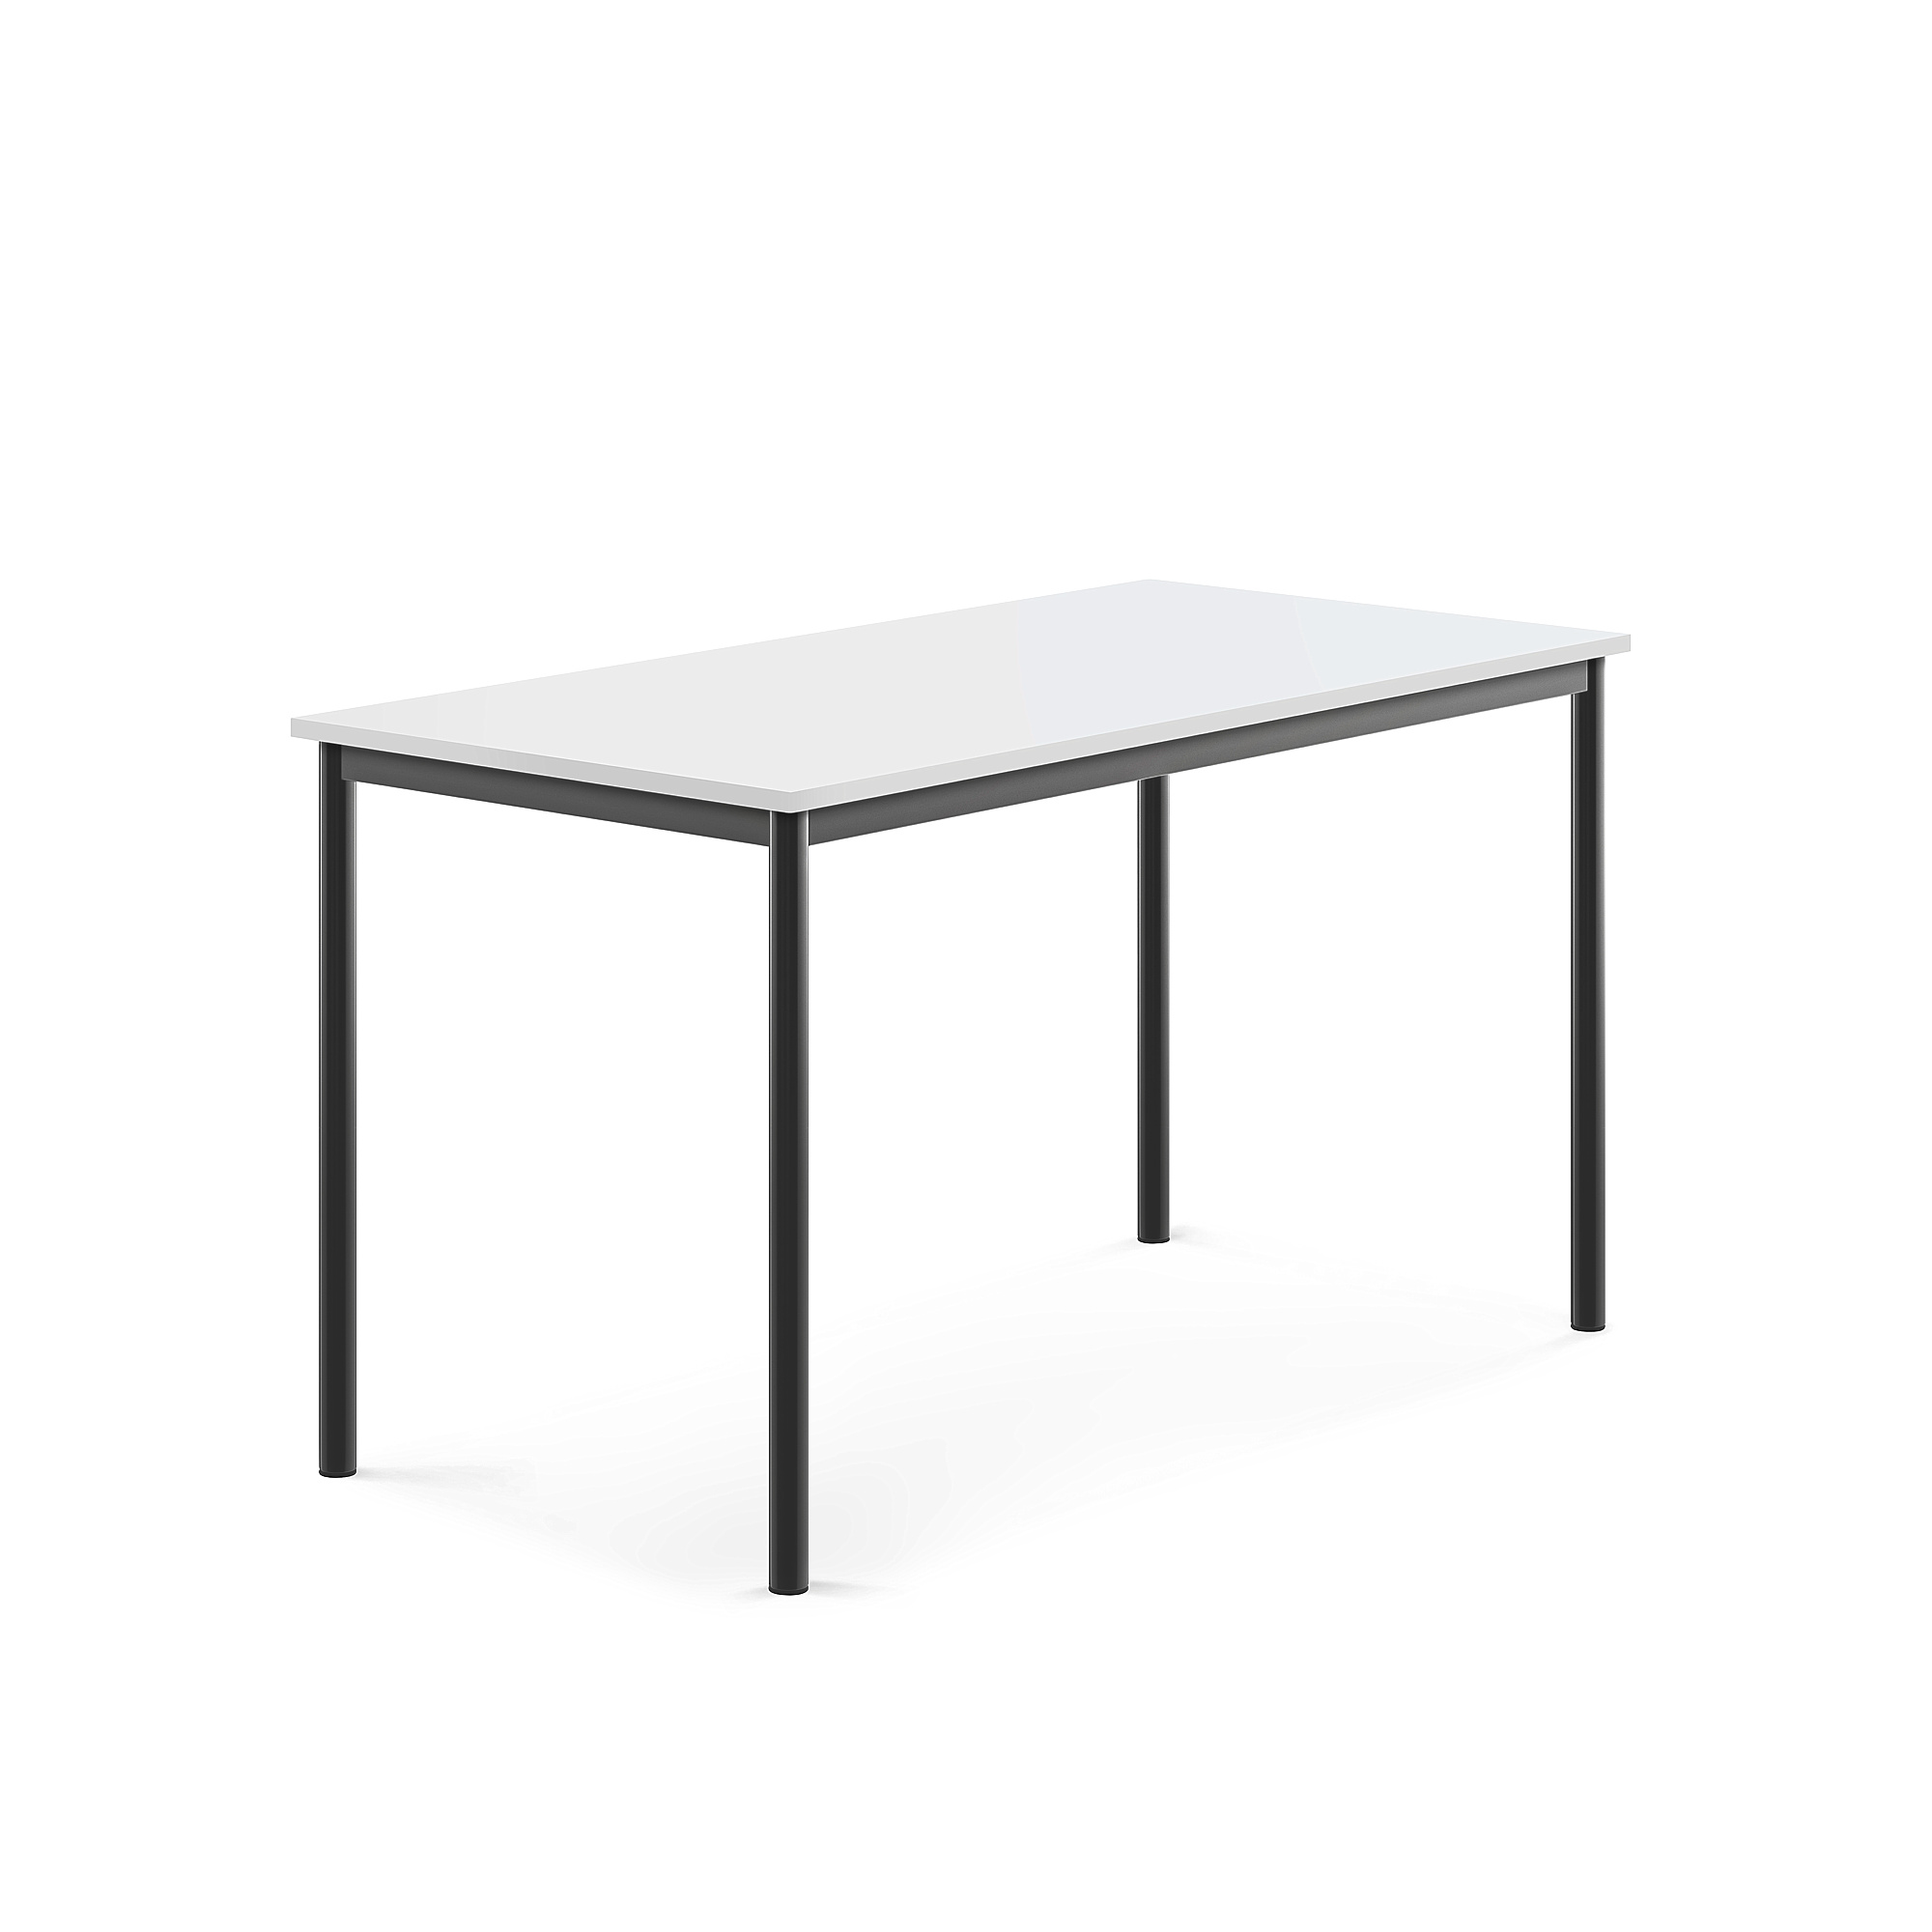 Stůl SONITUS, 1400x700x760 mm, antracitově šedé nohy, HPL deska tlumící hluk, bílá